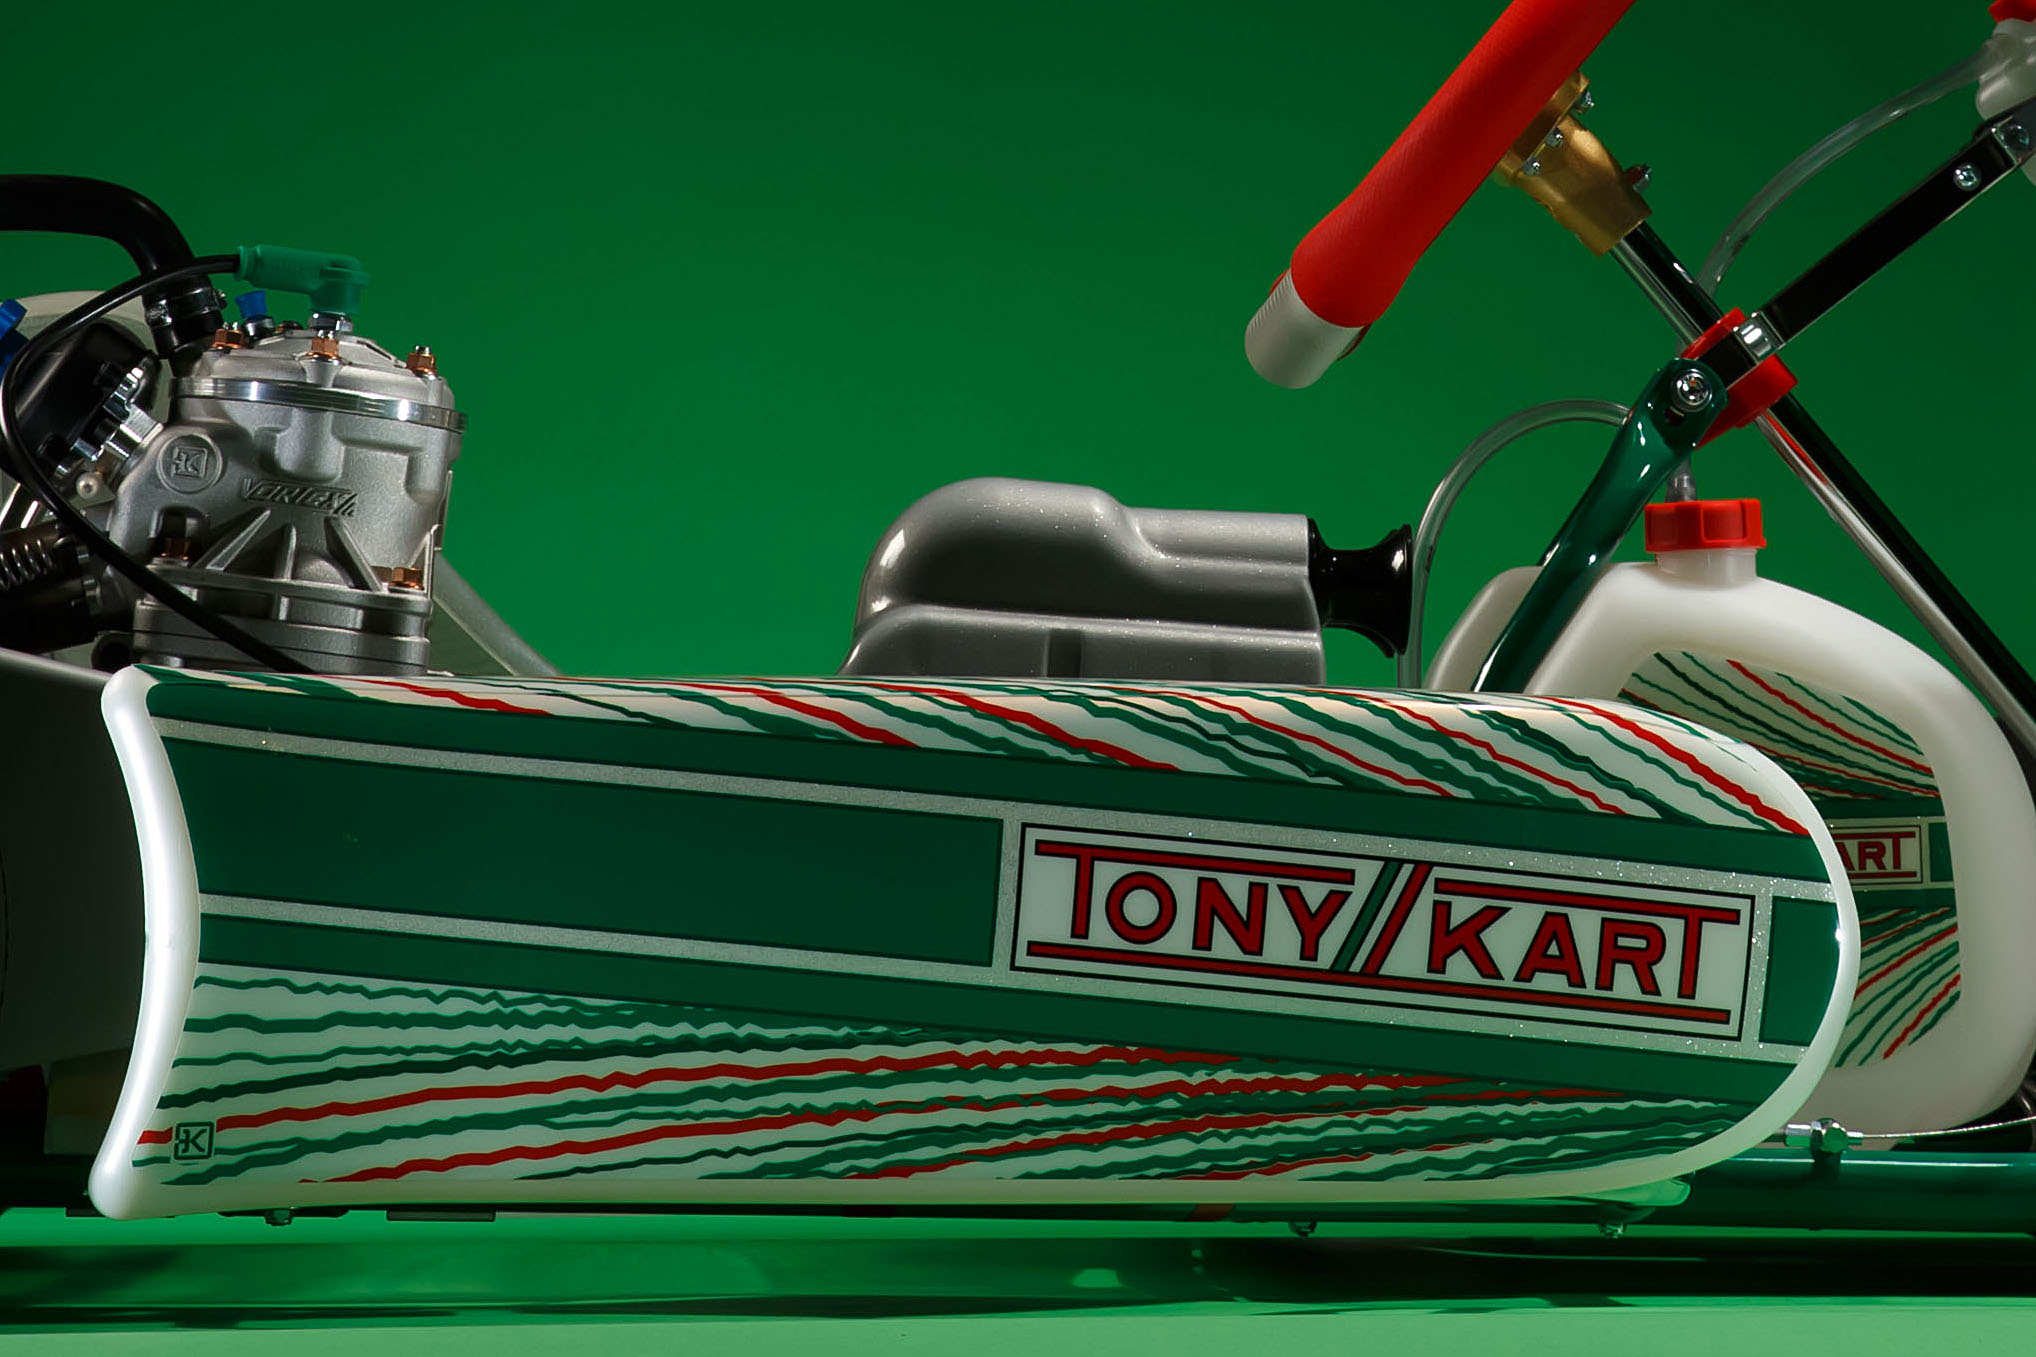 TonyKart Racer 801RR Rotax DD2